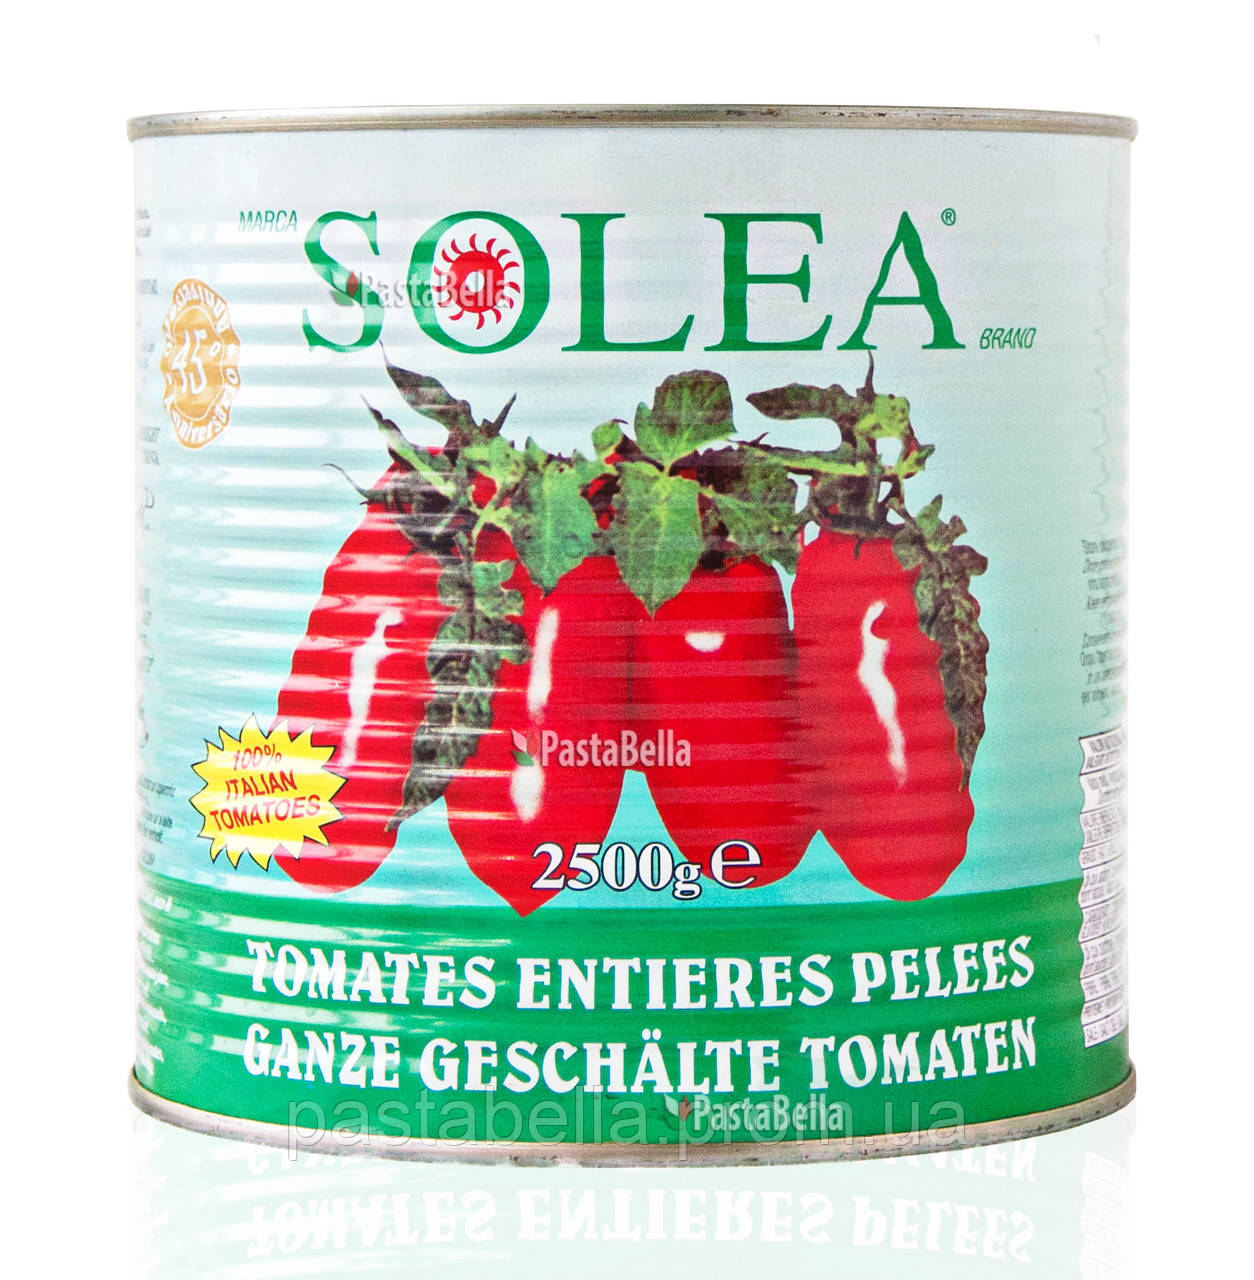 Італійські Томати пелаті у власному соку - Pomodori pelati 2500g "Solea" Pastabella